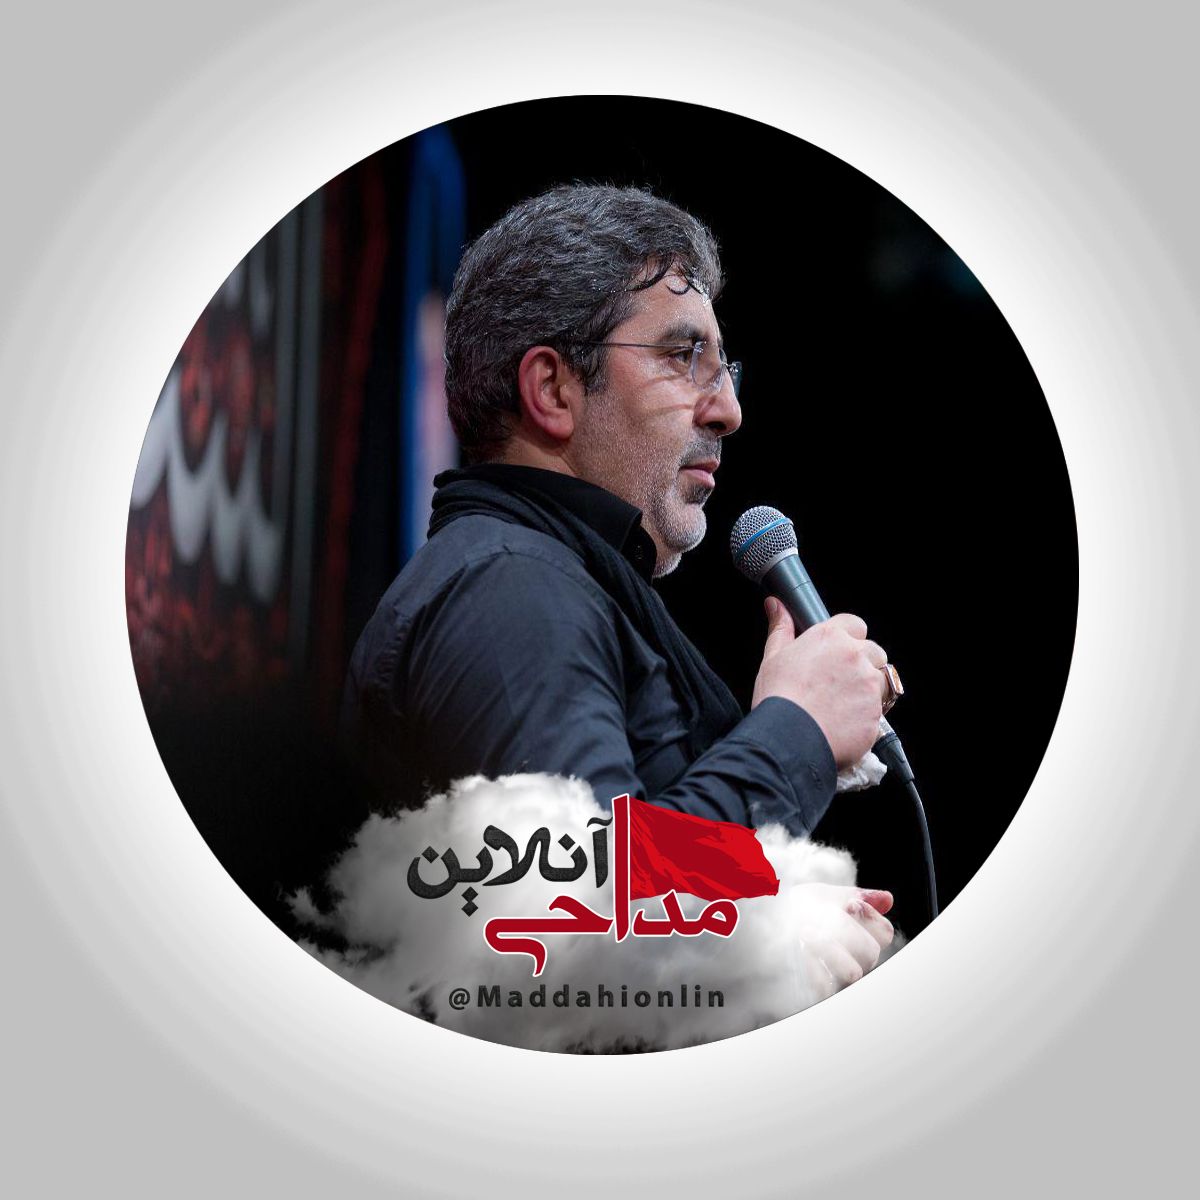 کار خدارو ببین چی شده از آسمون حاج محمدرضا طاهری شب سوم محرم ۹۸